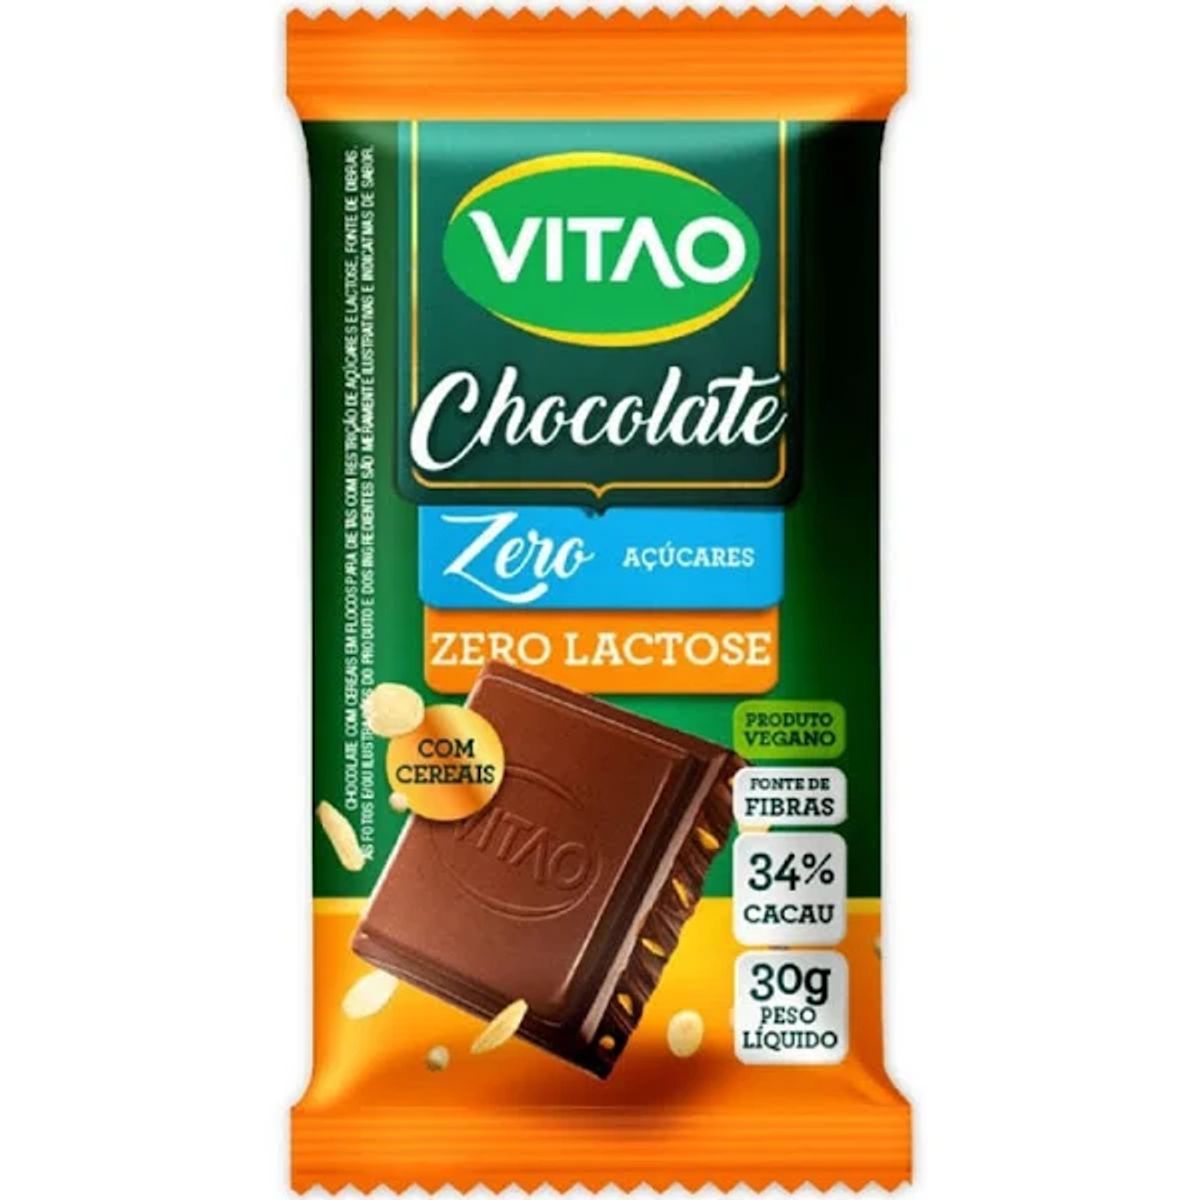 Chocolate Vitao Cereais 34% Cacau Zero Açúcar 30g